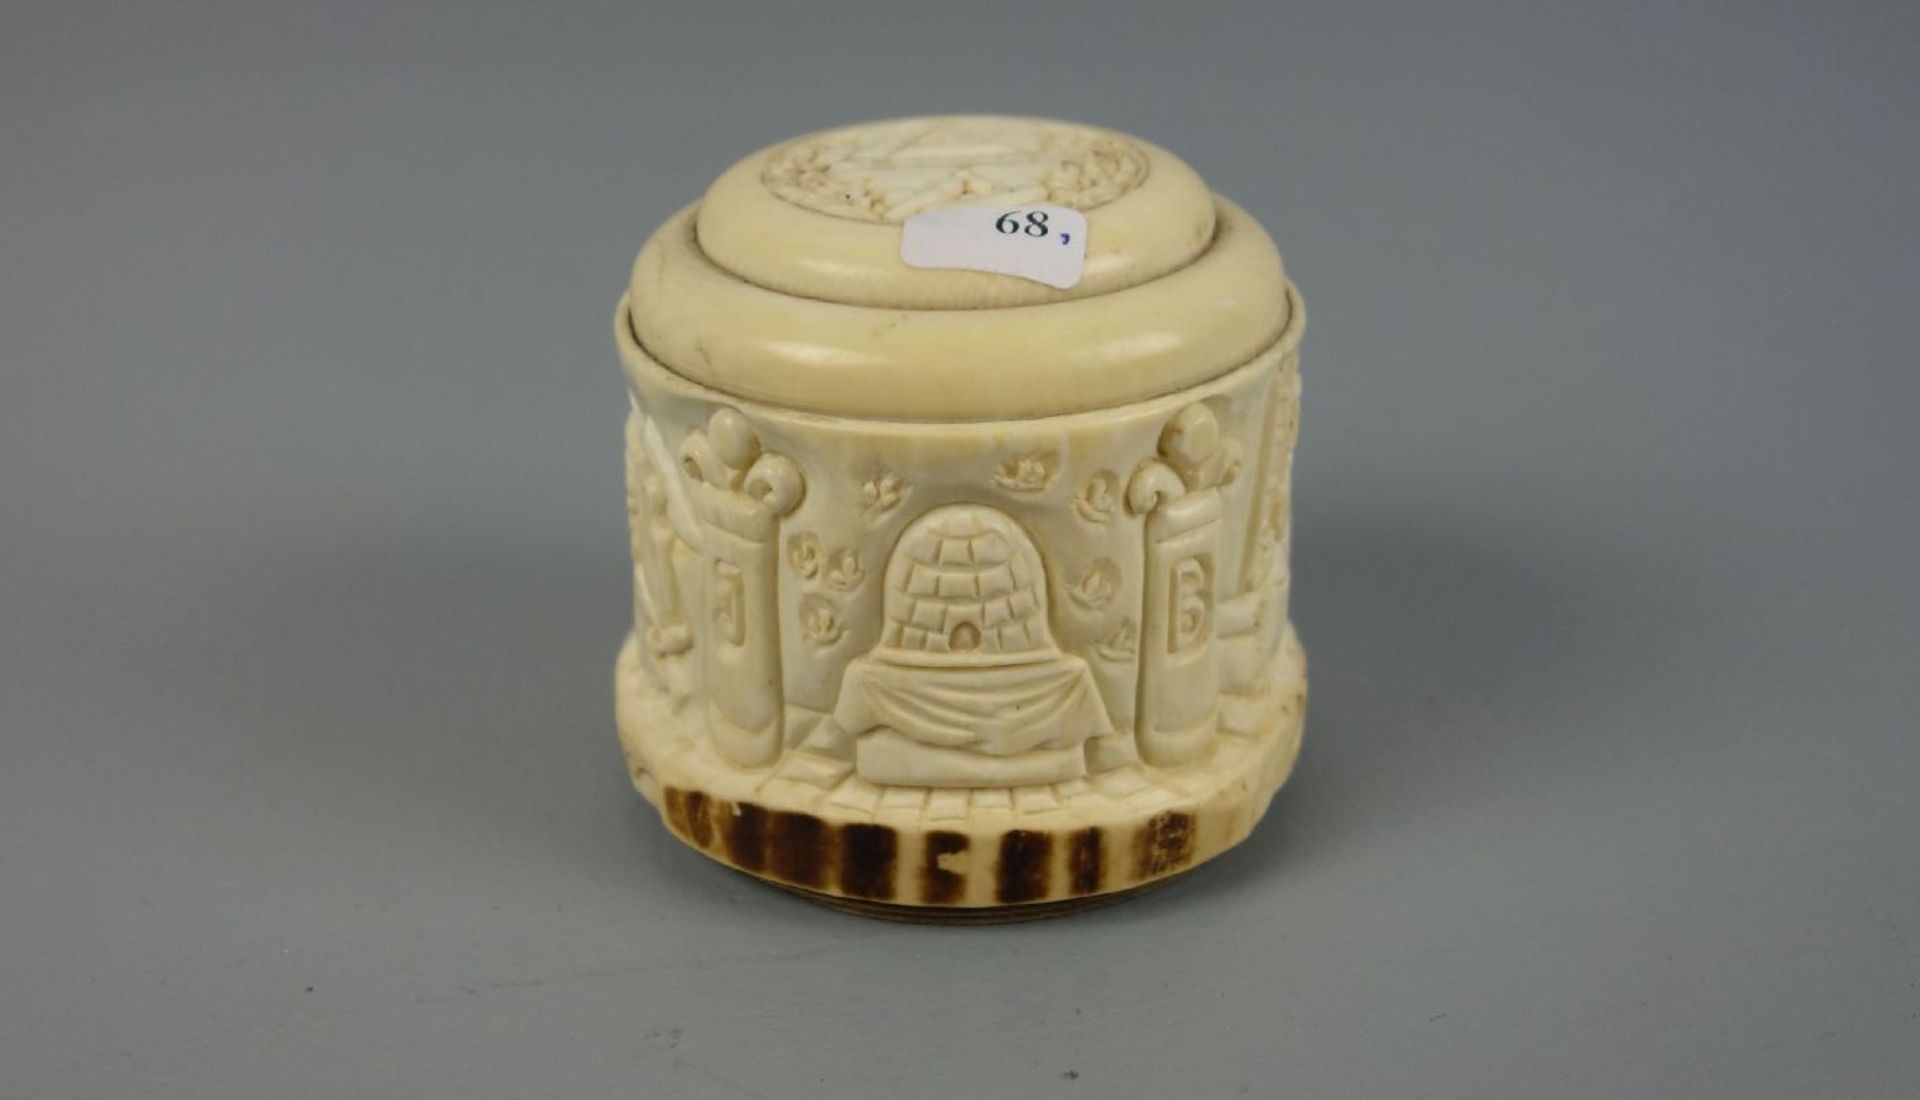 FREIMAURER SPARDOSE / masonic money box, 19. Jh., Elfenbein und Holz , Frankreich, datiert "1839"